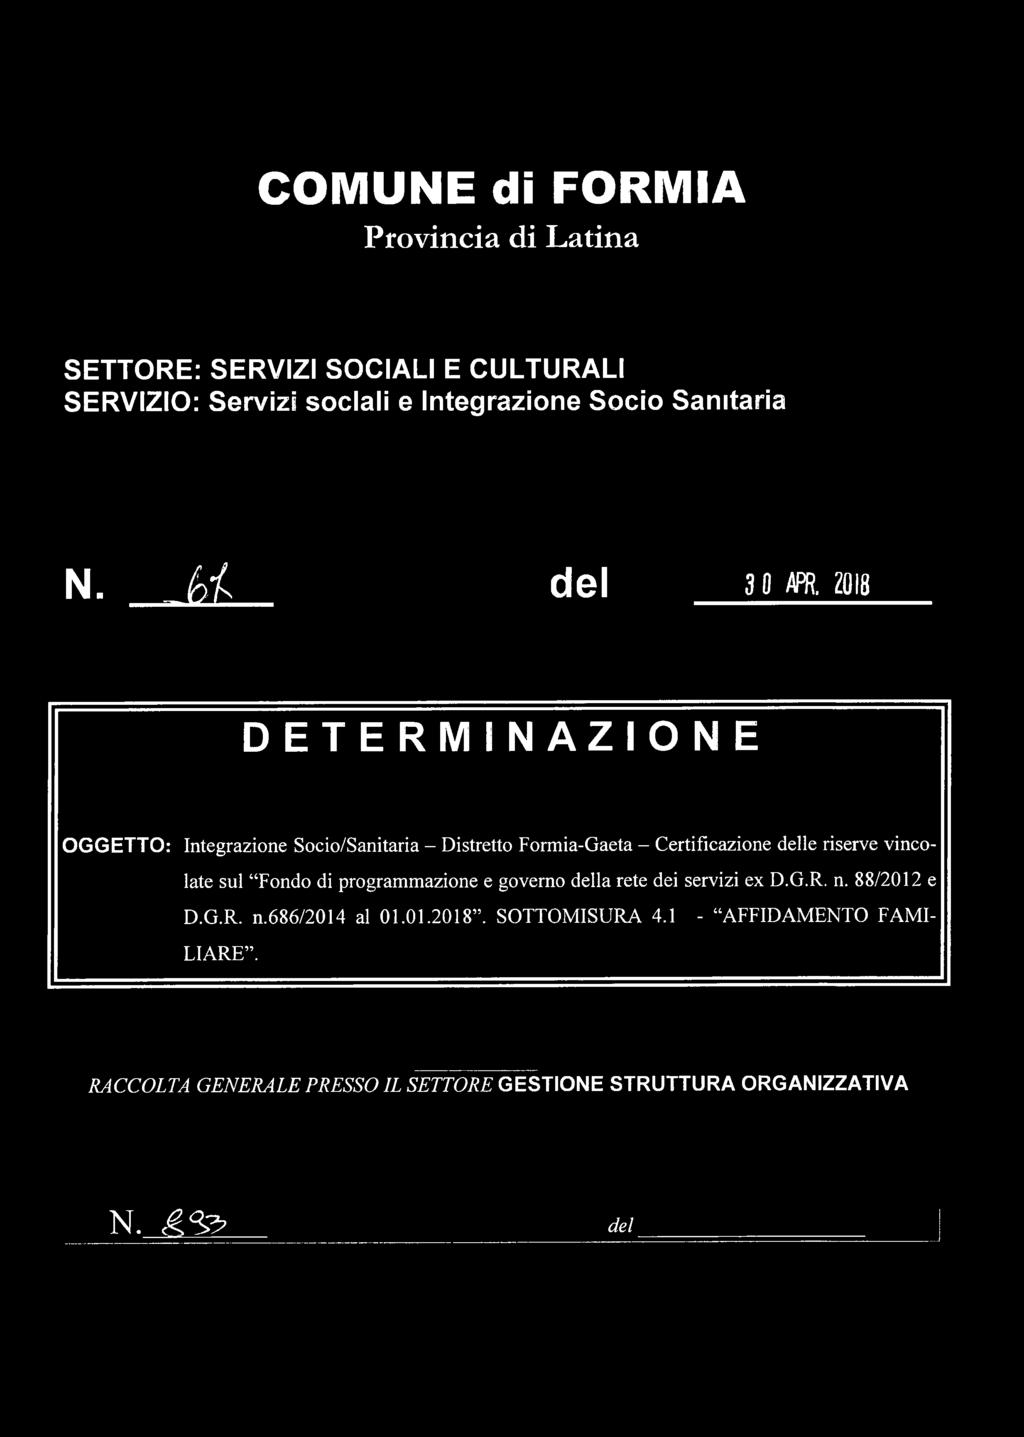 2018 DETERMINAZIONE O G G E T T O : Integrazione Socio/Sanitaria - Distretto Formia-Gaeta - Certificazione delle riserve vincolate